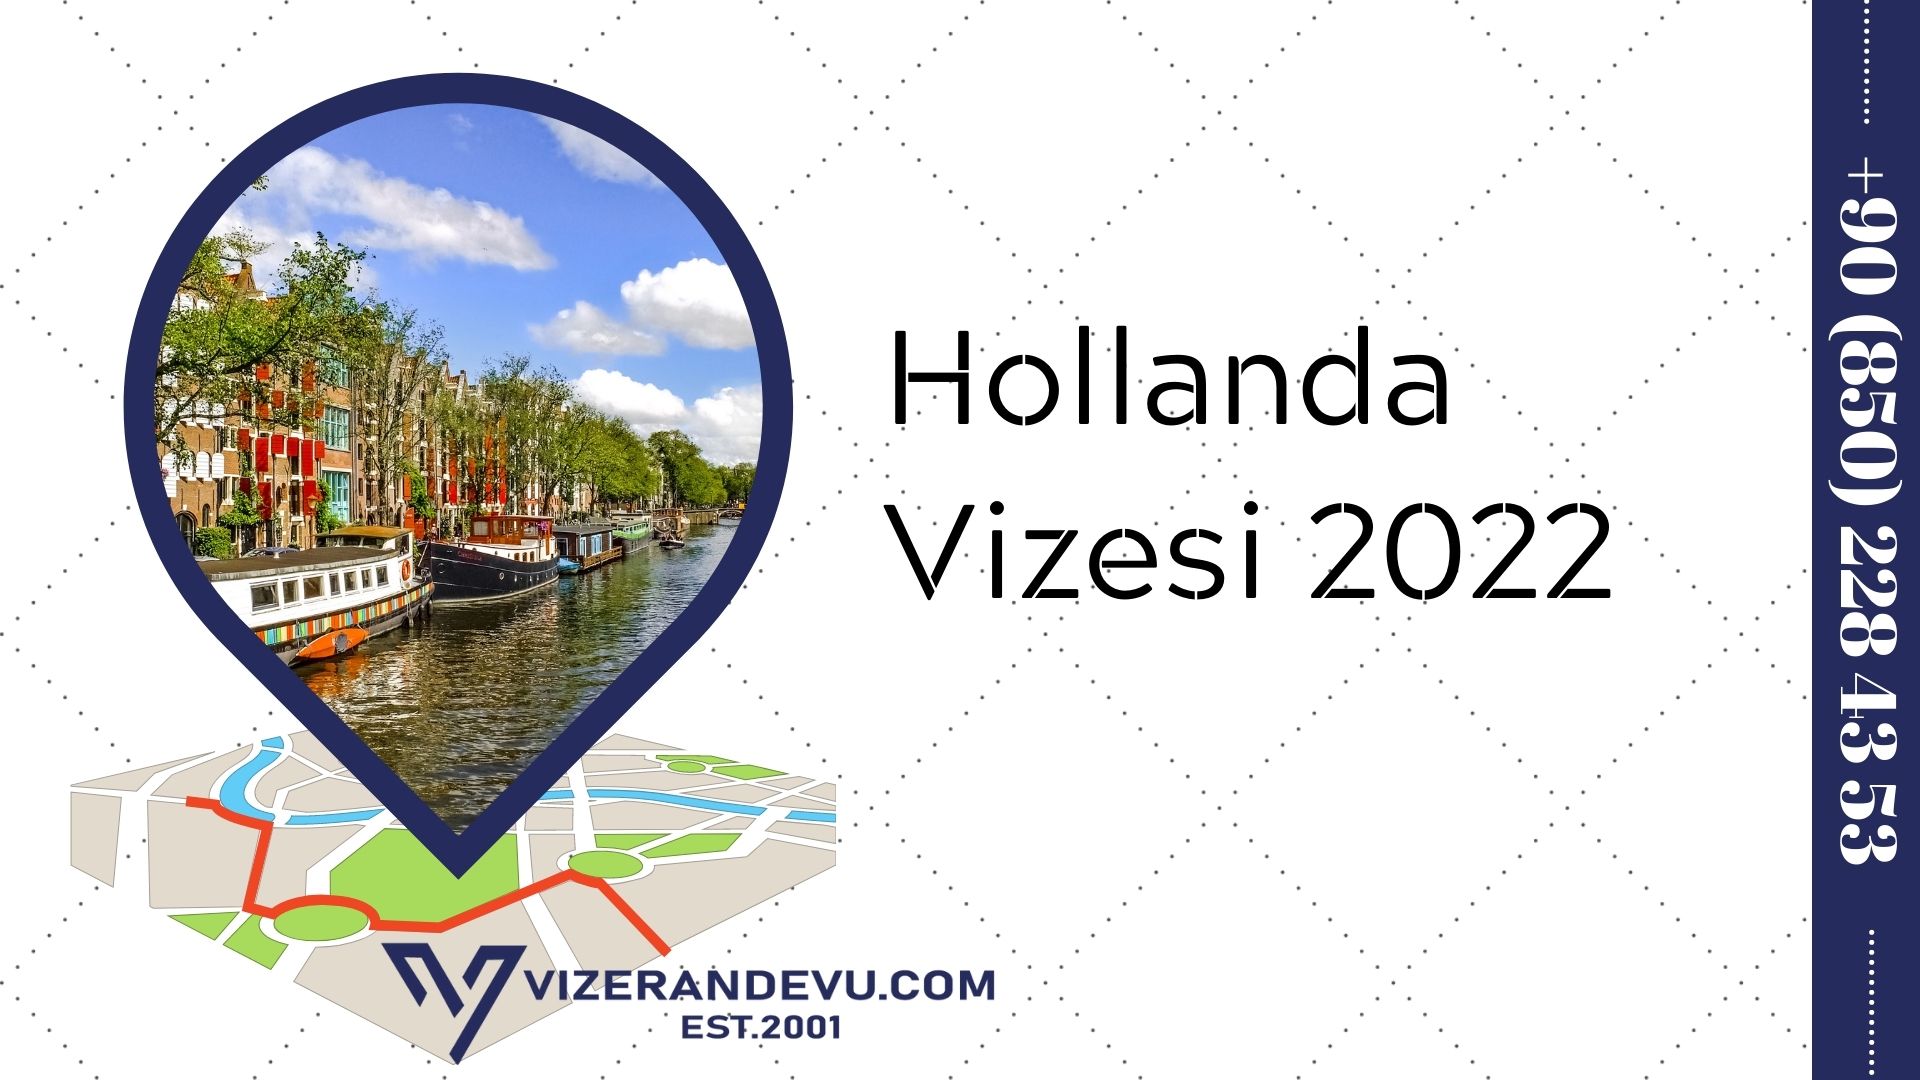 Hollanda Vizesi 2022